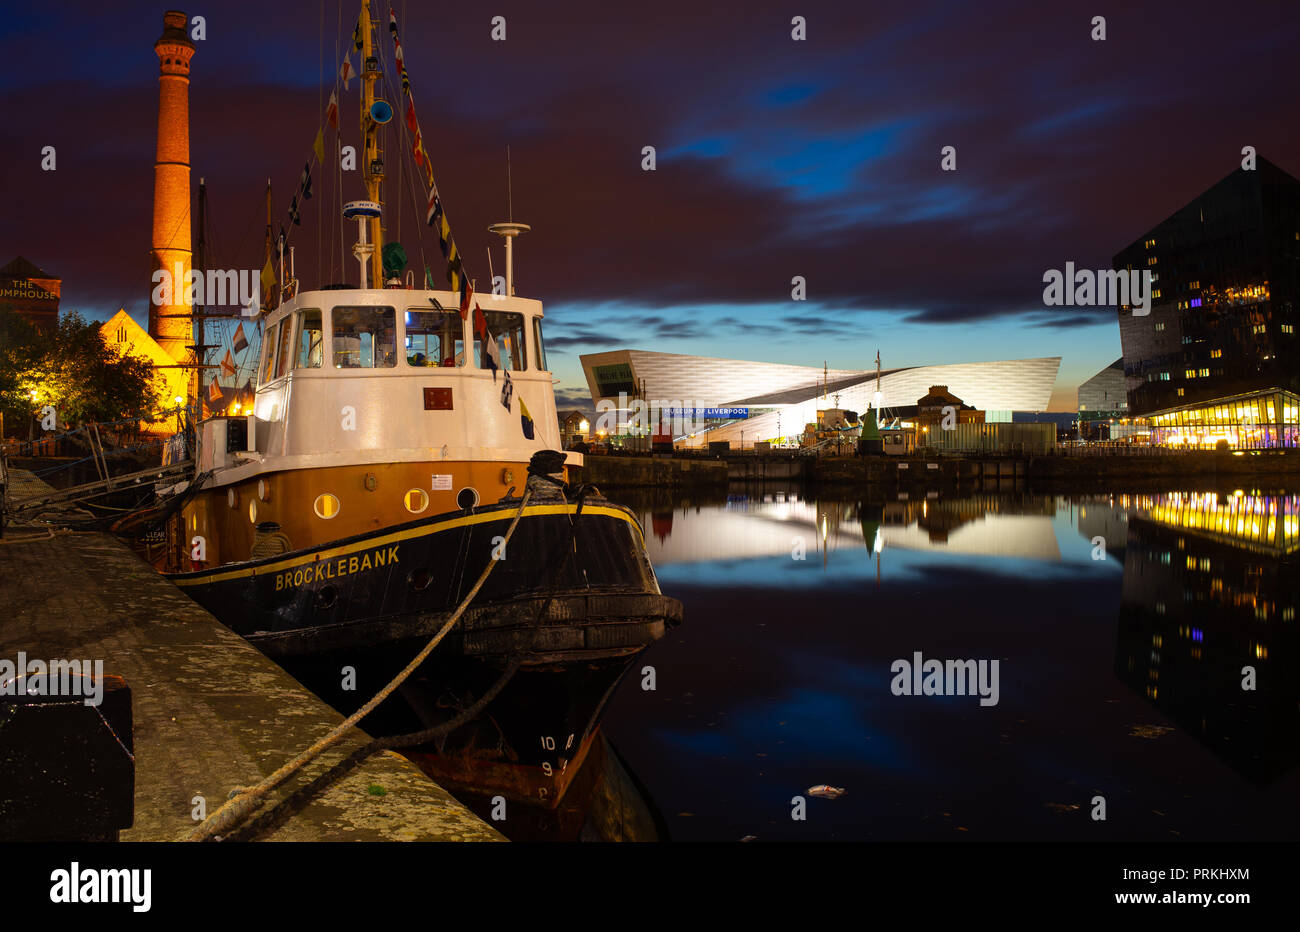 Brocklebank barca nel Dock di inscatolamento, accanto ad Albert Dock, Liverpool. Liverpool Museum in background. Immagine presa nel settembre 2018. Foto Stock